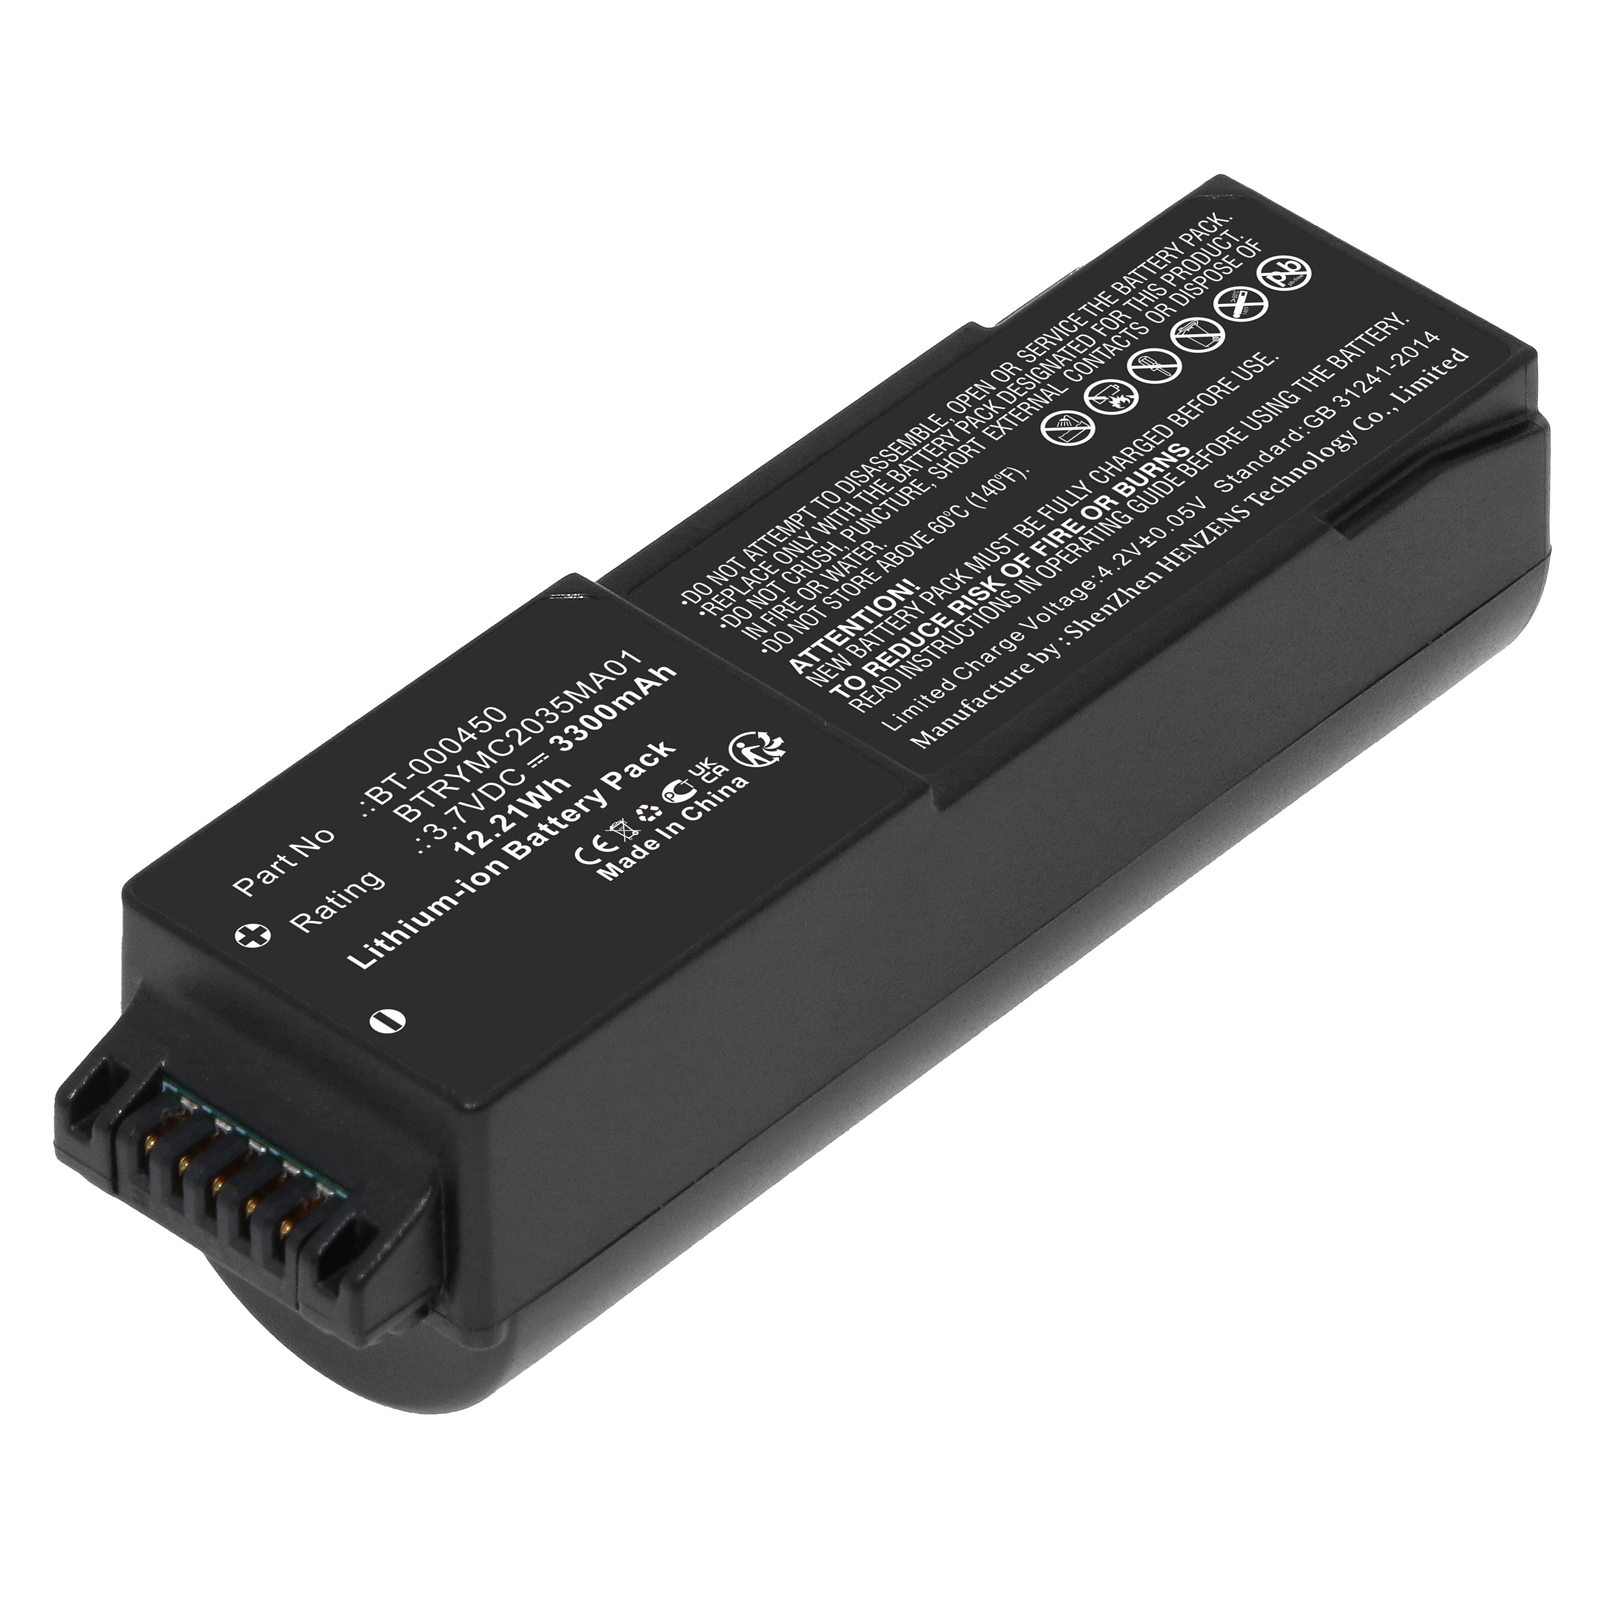 Synergy Digital Barcode Scanner Battery, Compatible with Zebra BT-000450 Barcode Scanner Battery (Li-ion, 3.7V, 3300mAh)